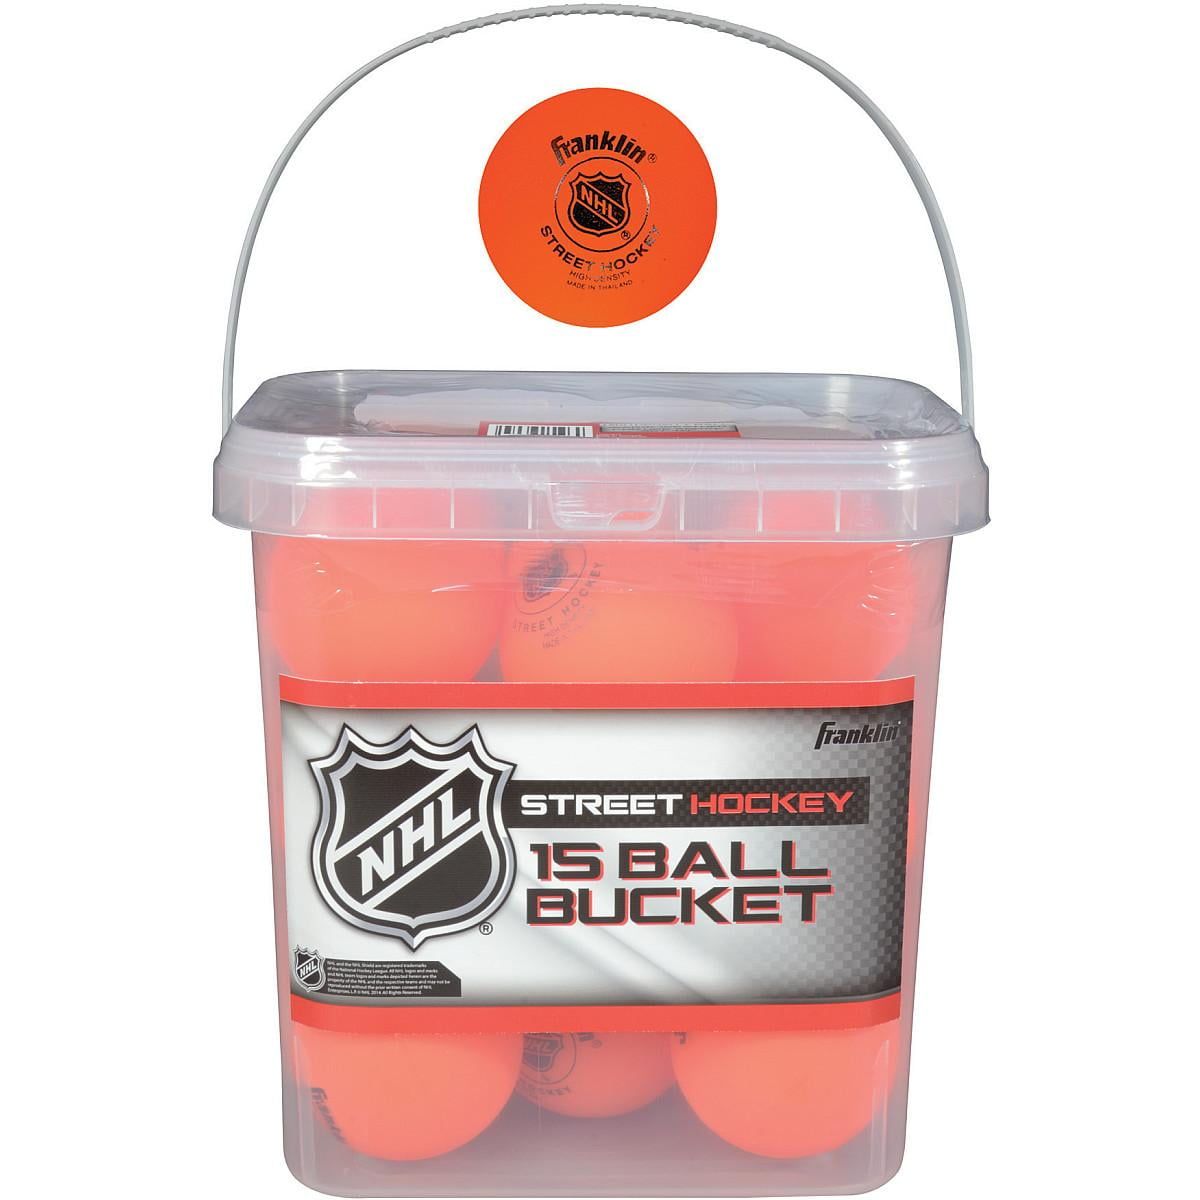 | Franklin Sports NHL高密度ボール、15ピースバケット：セット内容持ち運びに便利な取っ手付きバケツと15個のボール 高視認性：鮮やかなオレンジ色の外装で、逃げたボールを簡単に追跡できる：各2.5/8インチのボールには、ナショナル・ホッケー・リーグの公式ロゴ入り。 | ※商品の仕様やパッケージは予告なく変更になる場合がございます。 ※化粧箱に破損があっても内容品に問題が無い場合は返品・交換を承ることはできません。 【重要】注意事項（ご購入前に必ずお読みください。） ・当店でご購入された商品は、原則として、「個人輸入」としての取り扱いになり、全てアメリカのカリフォルニア州からお客様のもとへ 直送されます。 ・個人輸入される商品は、全てご注文者自身の「個人使用・個人消費」が前提となりますので、ご注文された商品を第三者へ譲渡・転売することは法律で禁止されております。個人輸入される商品は、すべてご注文者自身の「個人使用・個人消費」が前提となりますので、ご注文された商品を第三者へ譲渡・転売することは法律で禁止されております。 ・通関時に関税・輸入消費税が発生した場合は当店が負担いたします。お客様にお支払いいただく関税消費税はございません。詳細はこちらをご確認下さい。 ・前払いの場合はご入金日から、それ以外の場合はご注文日から7日以内に国際発送、17日以内にお届け予定です。商品の在庫状況やアメリカ国内での配送状況、通関の状況等によって、商品のお届けまでに17日以上かかる場合がございます。 ・当店ではご注文後に在庫の確保を行うため、ご注文後に商品が品切れとなる場合がございます。その場合お客様にご連絡後、返金対応致します。なお、ご注文から30分経過後のキャンセル、変更、お客様都合による返品・交換はお断り致しております。 ・住所不明・長期不在・受取拒否などお客様のご都合で商品を受け取りされず、配送会社のセンターへ商品が返送された場合、当店が定める期日までにお客様から配送会社へ再配達のご連絡をして頂けない場合はご注文をキャンセルさせて頂きます。その場合でもアメリカからの商品の発送費用や返送費用などは請求させて頂きます。 ＊色がある商品の場合、モニターの発色の具合によって実際のものと色が異なって見える場合がございます | Franklin Sports NHL High-Density Balls, 15-Piece Bucket: INCLUDES: Bucket with a handle for portability and 15 balls HIGH VISIBILITY: Bright orange exterior makes it easy to track down balls that get away LICENSED: Each 2 5/8" ball has the official National Hockey League logo WEATHER: Balls perform best above 32&deg;F / 0&deg;C STRUCTURE: PVC, balls are air-filled and have a hard exterior